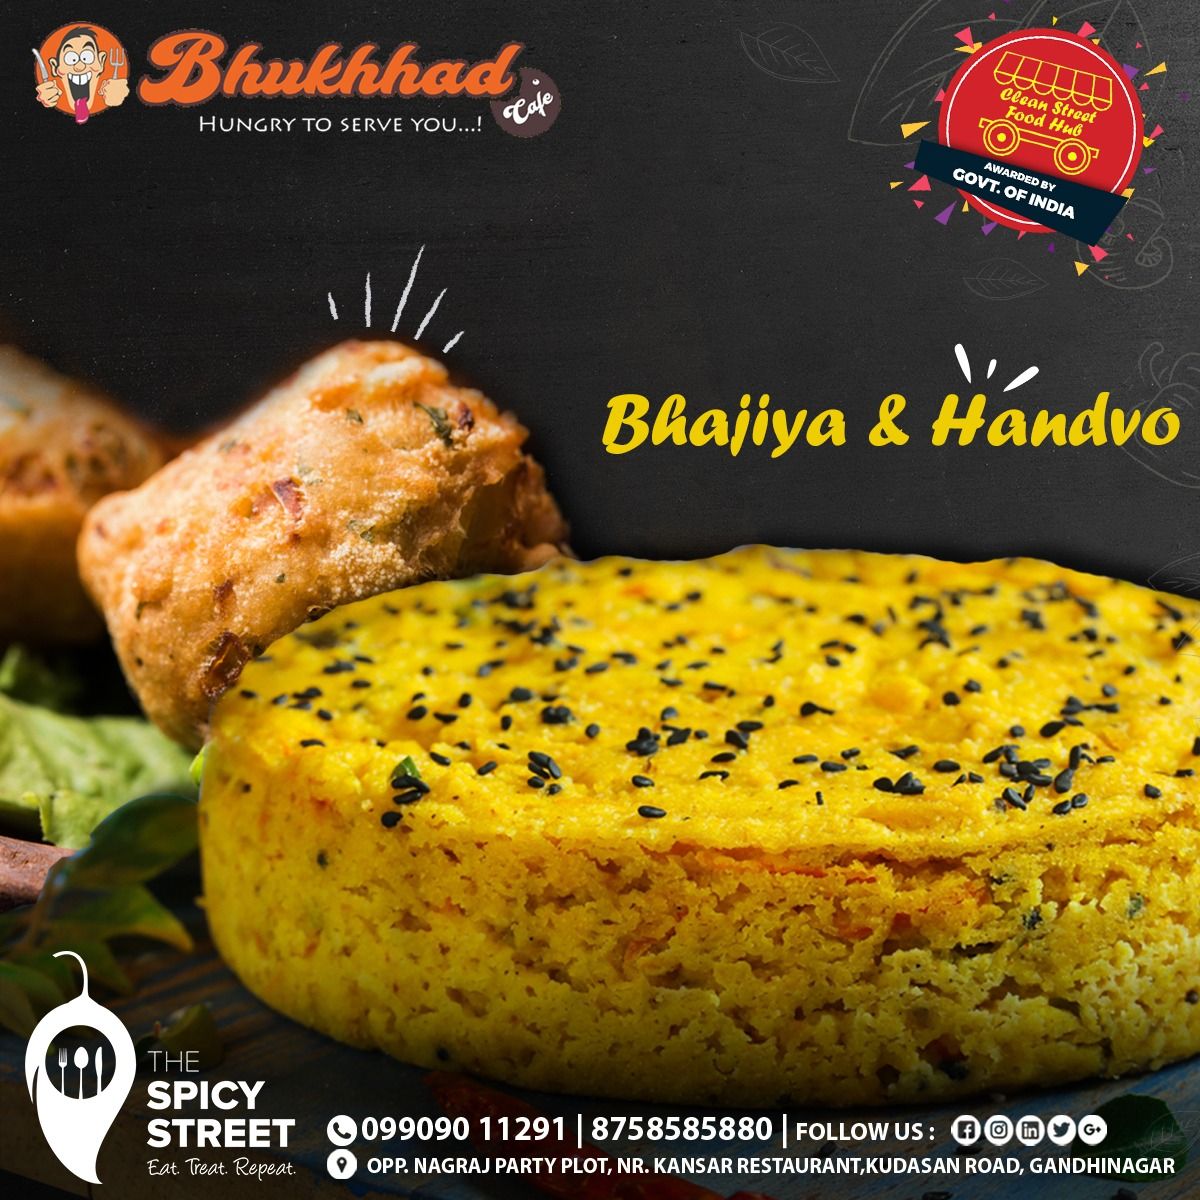 Happiness is a tasty Gud wali Tandoori Chai with Handvo & Bhajiya at The Spicy Street.
.
.
#TheSpicyStreet #Kudasan #Gandhinagar #Ahmedabad #Handvo #Bhajiya #TandooriChai #Tandoori #Chai #GujaratiNasto #Nasto #GujaratiThali #GujaratiFood #BestDish #GujjuFood #GujjuLover